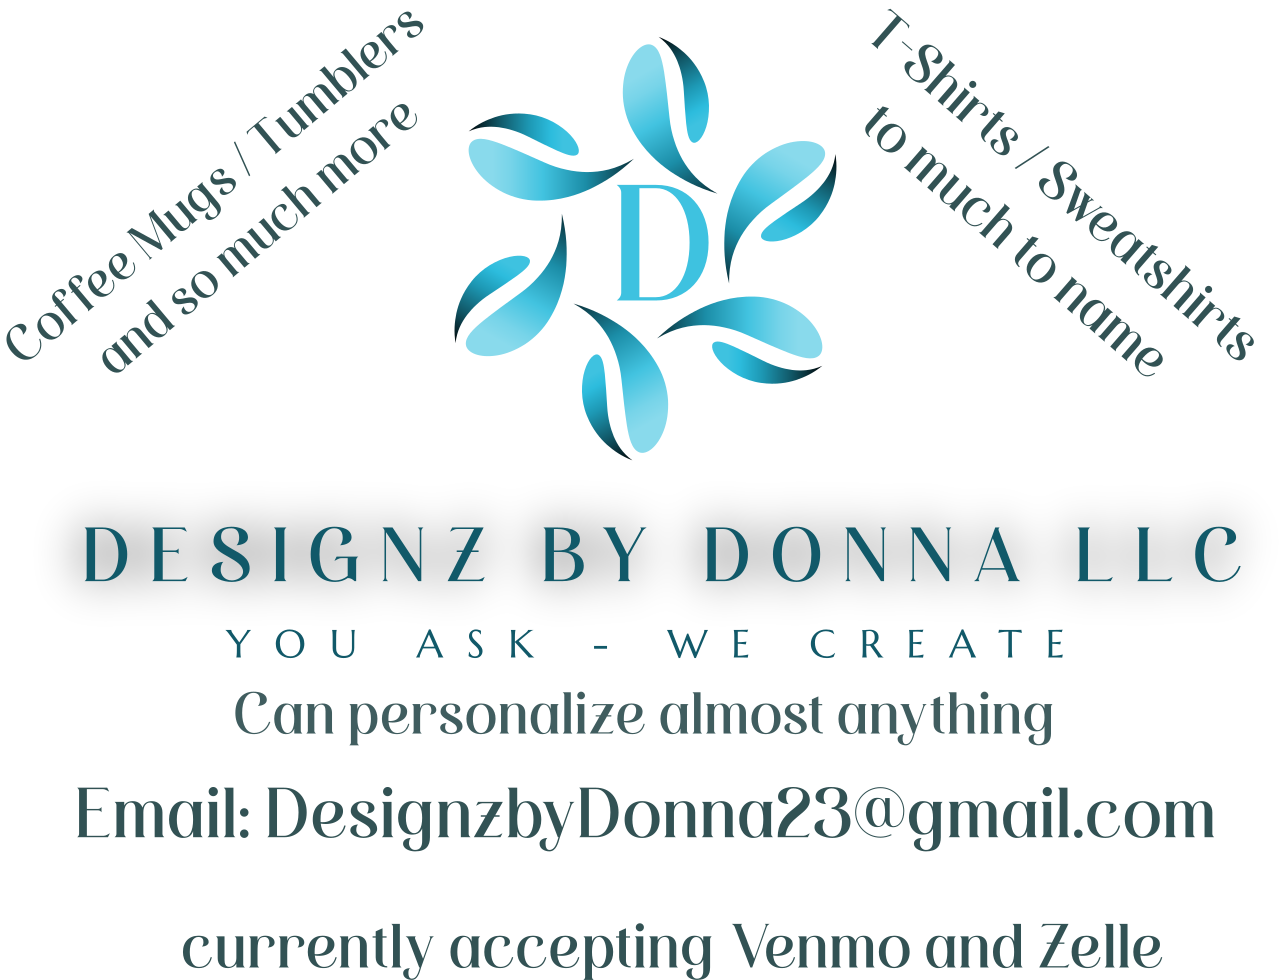 designz By Donna llc's logo